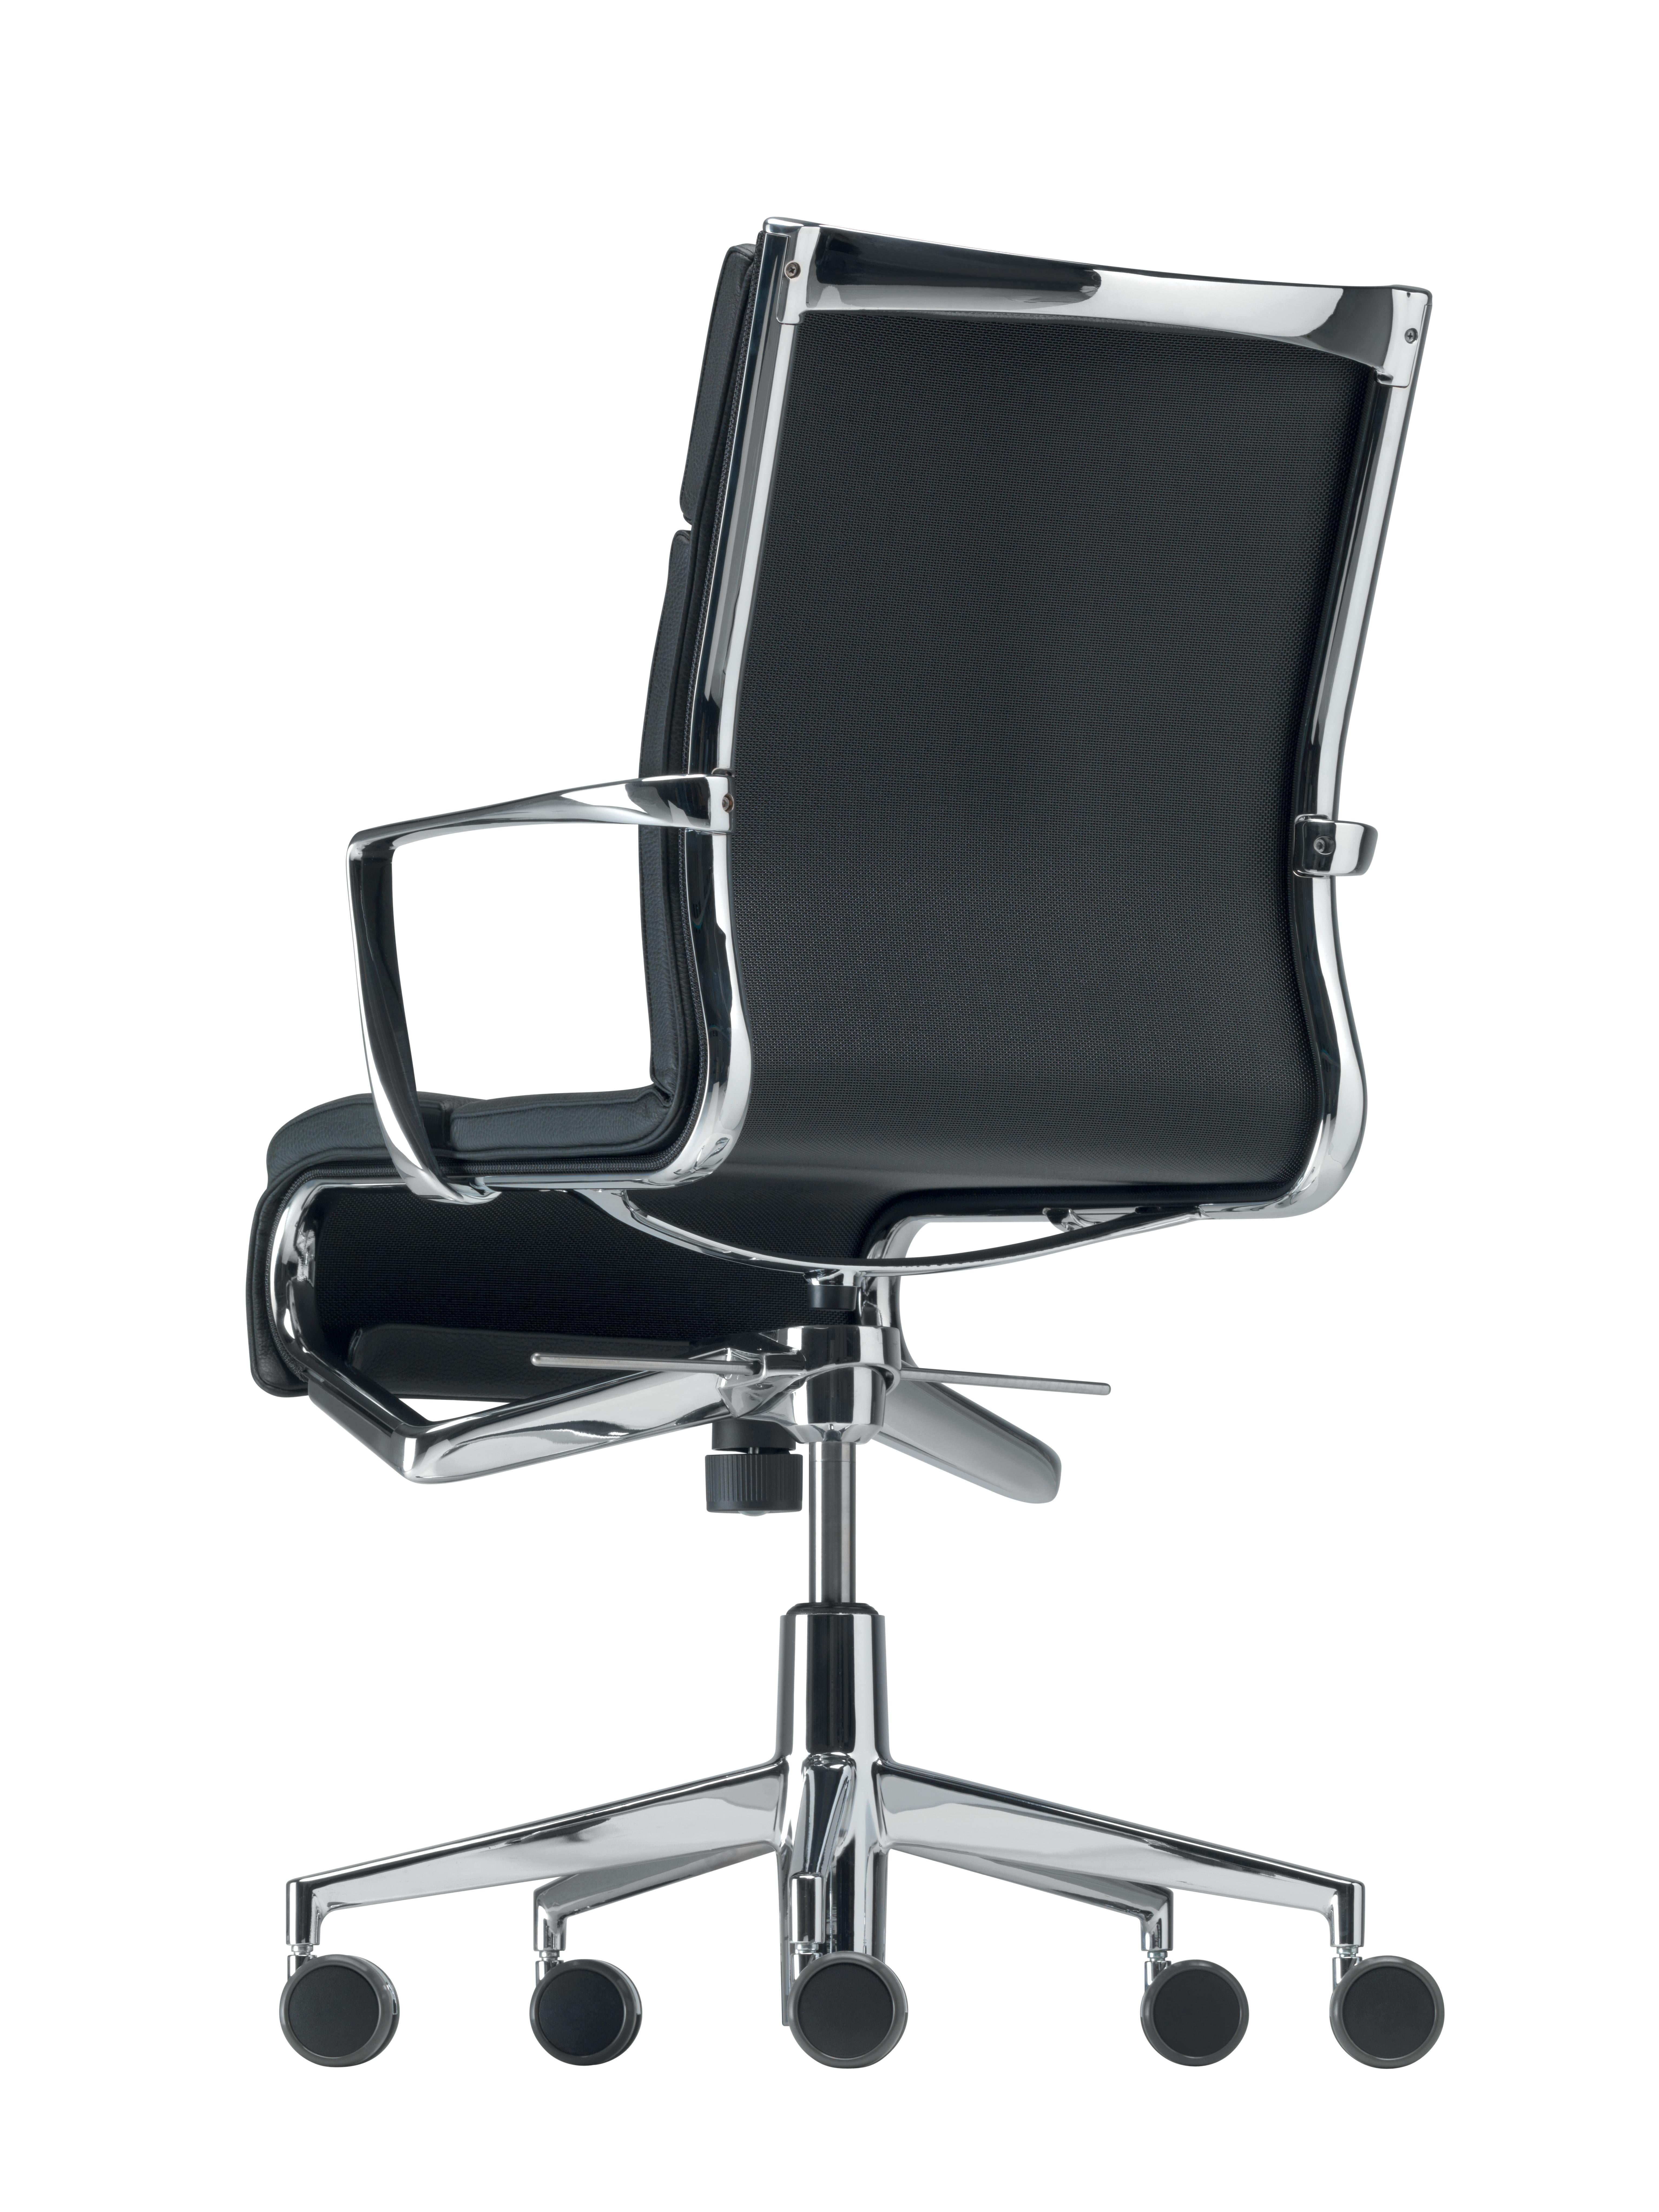 Italian Alias 445 Rollingframe+ Tilt 47 Chair in Black Mesh & Chromed Aluminium Frame For Sale